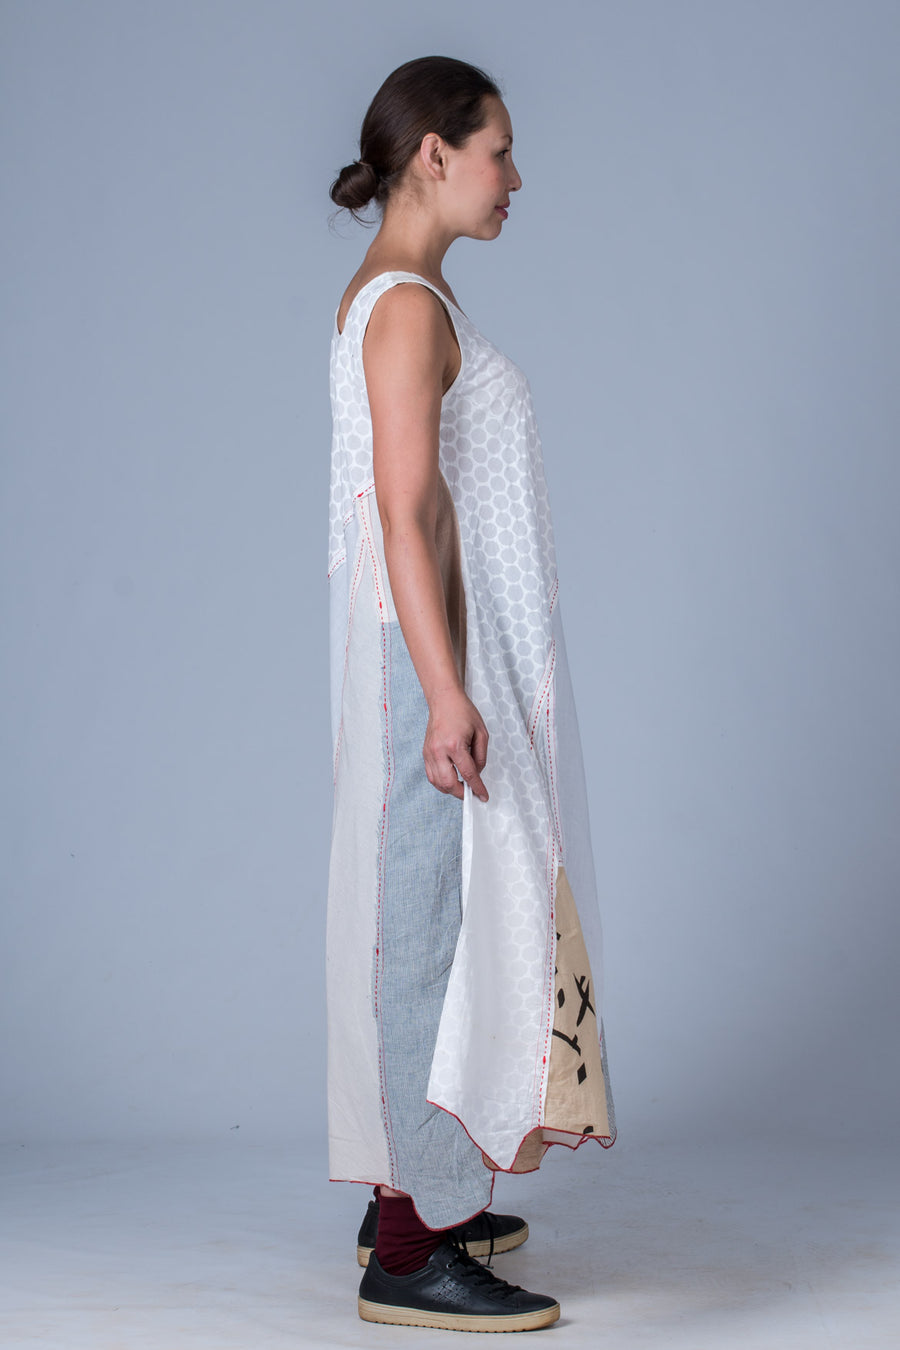 Off White Upcycled Dress - NAISHA - Upasana Design Studio